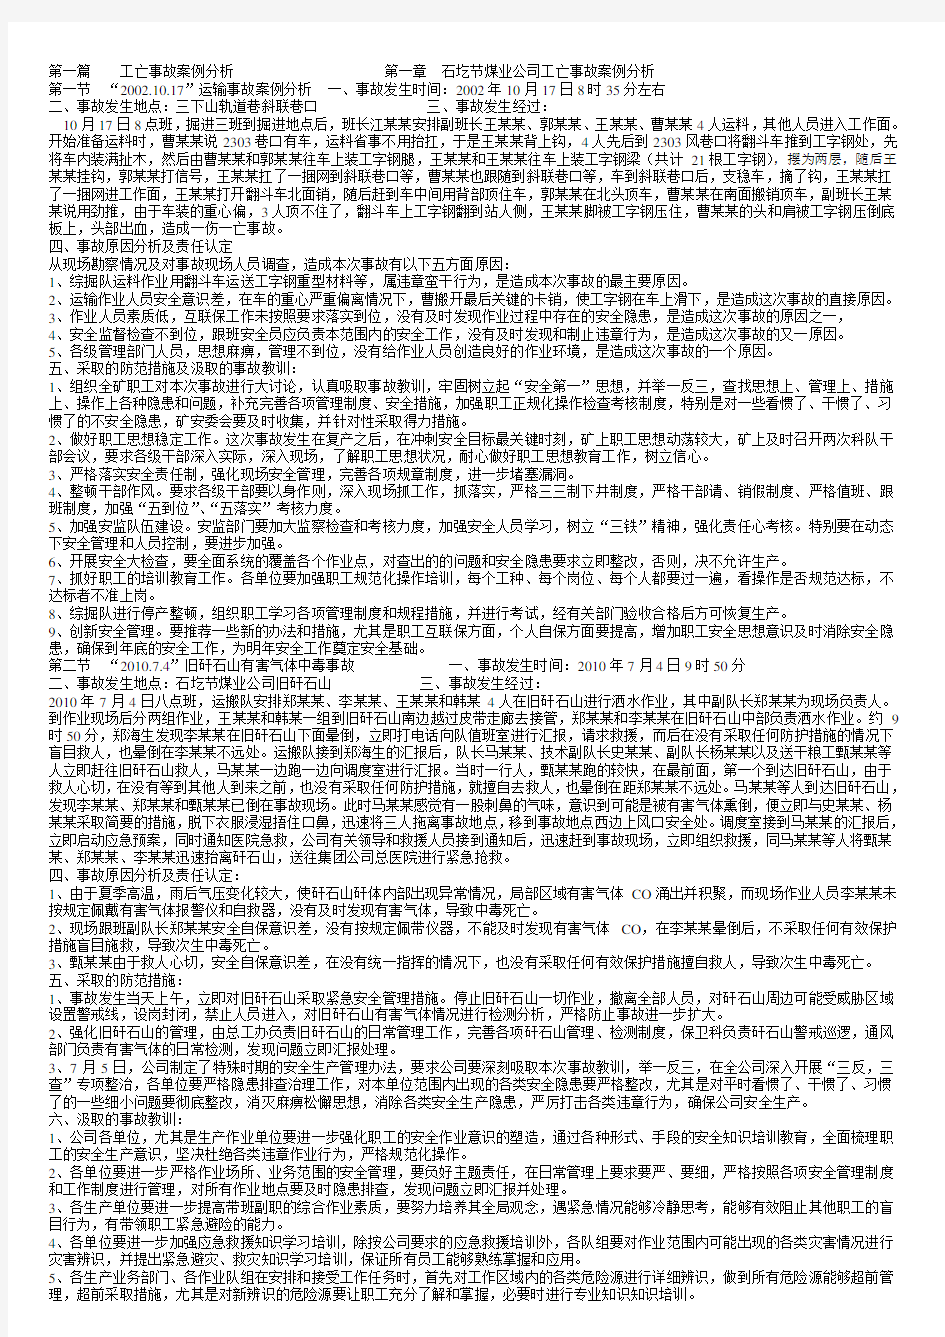 潞安集团公司事故案例警示教育学习材料